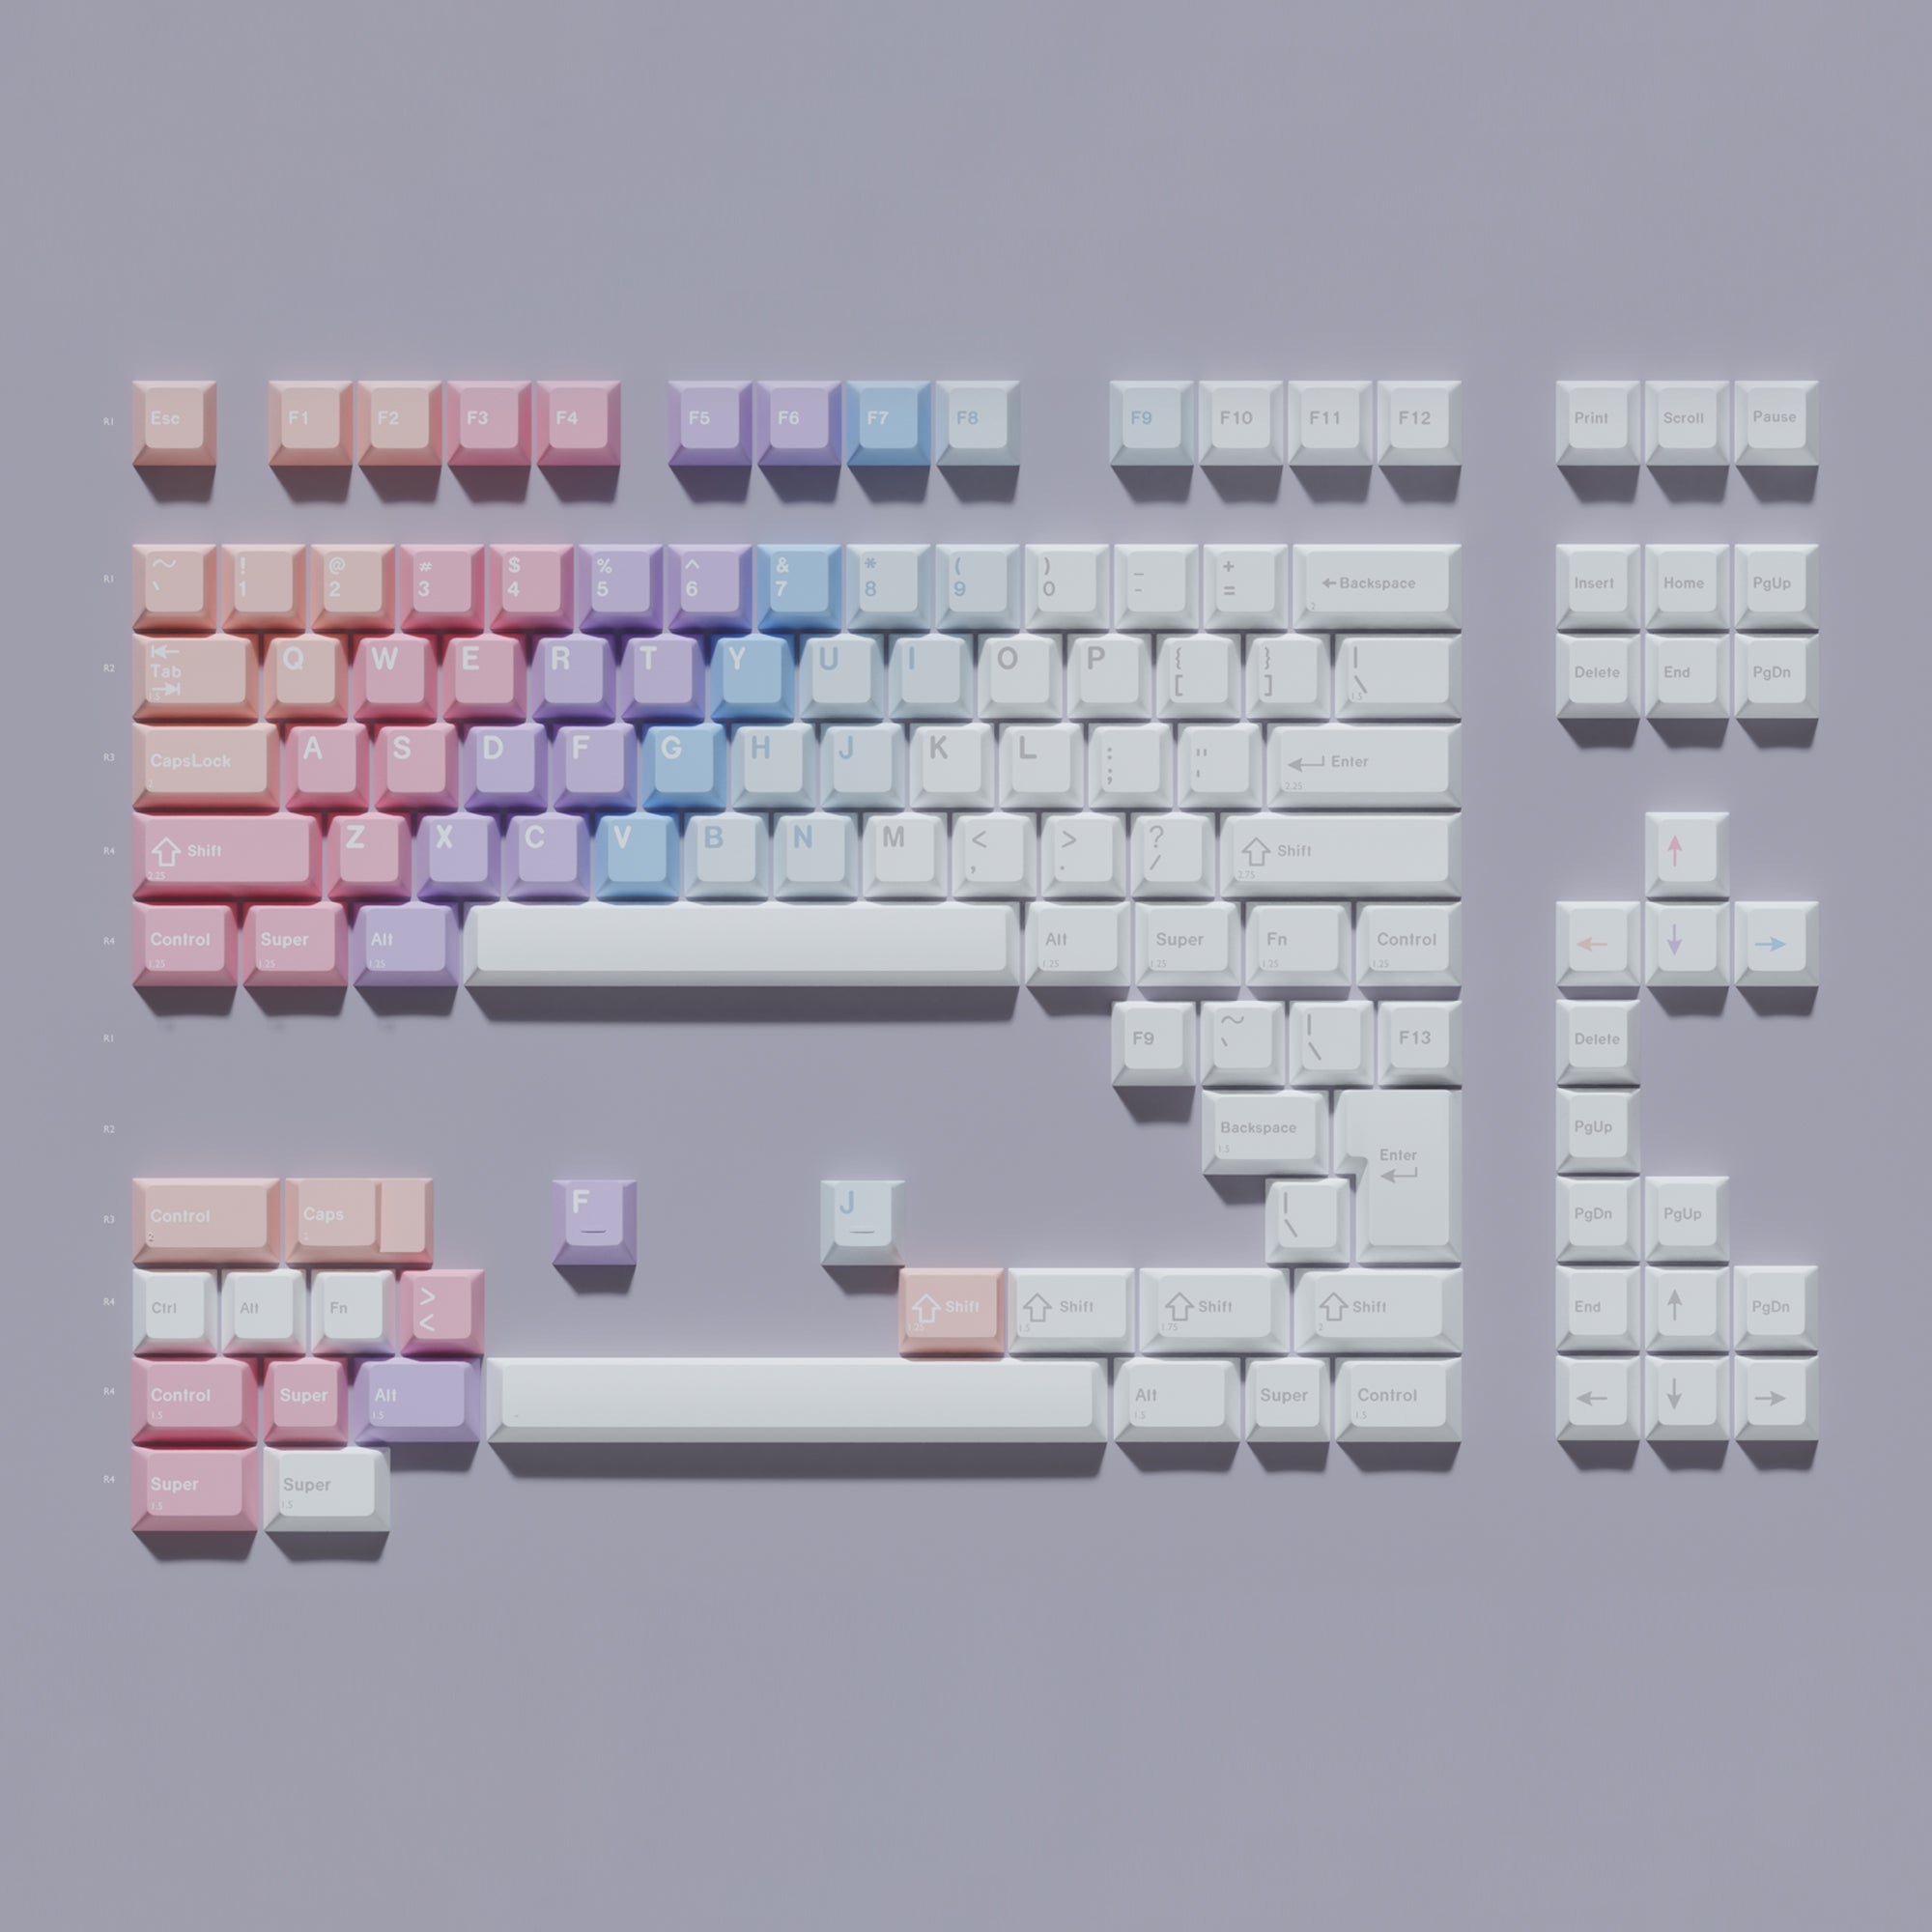 KBDfans Custom Keyboard ePBT Dreamscape